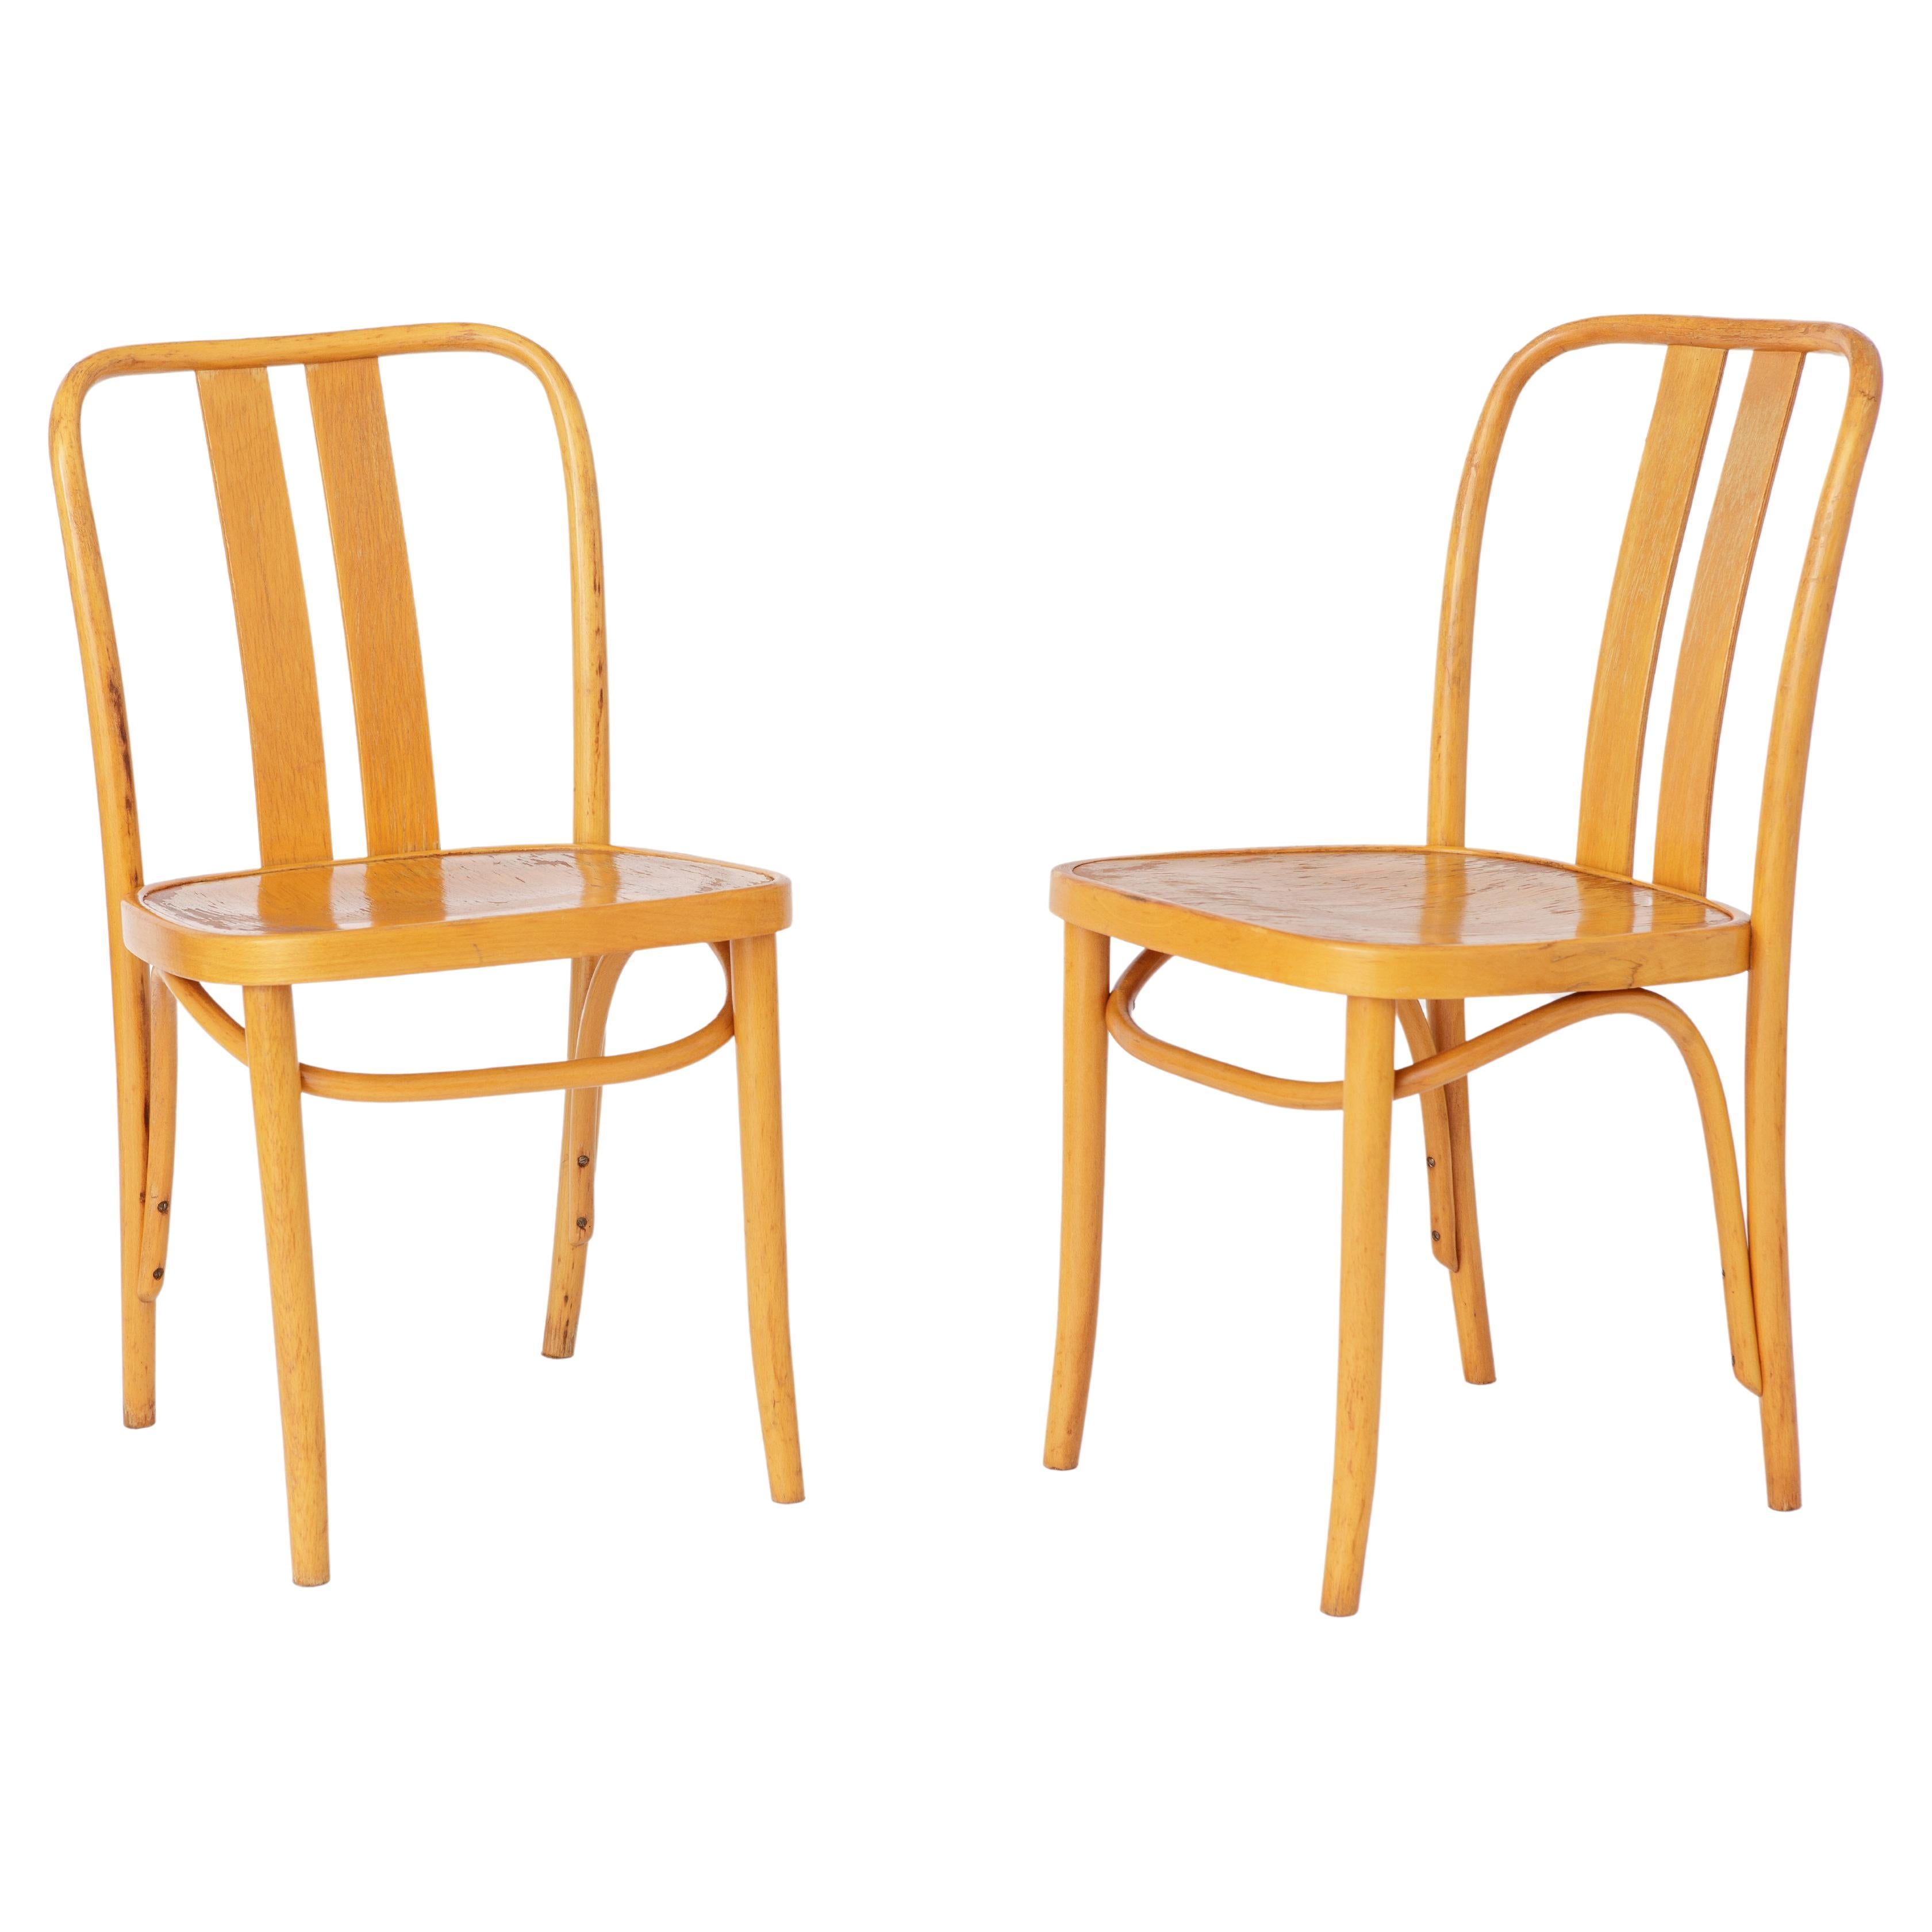 2 chaises IKEA vintage Lena par Radomsko, années 1970, bois cintré